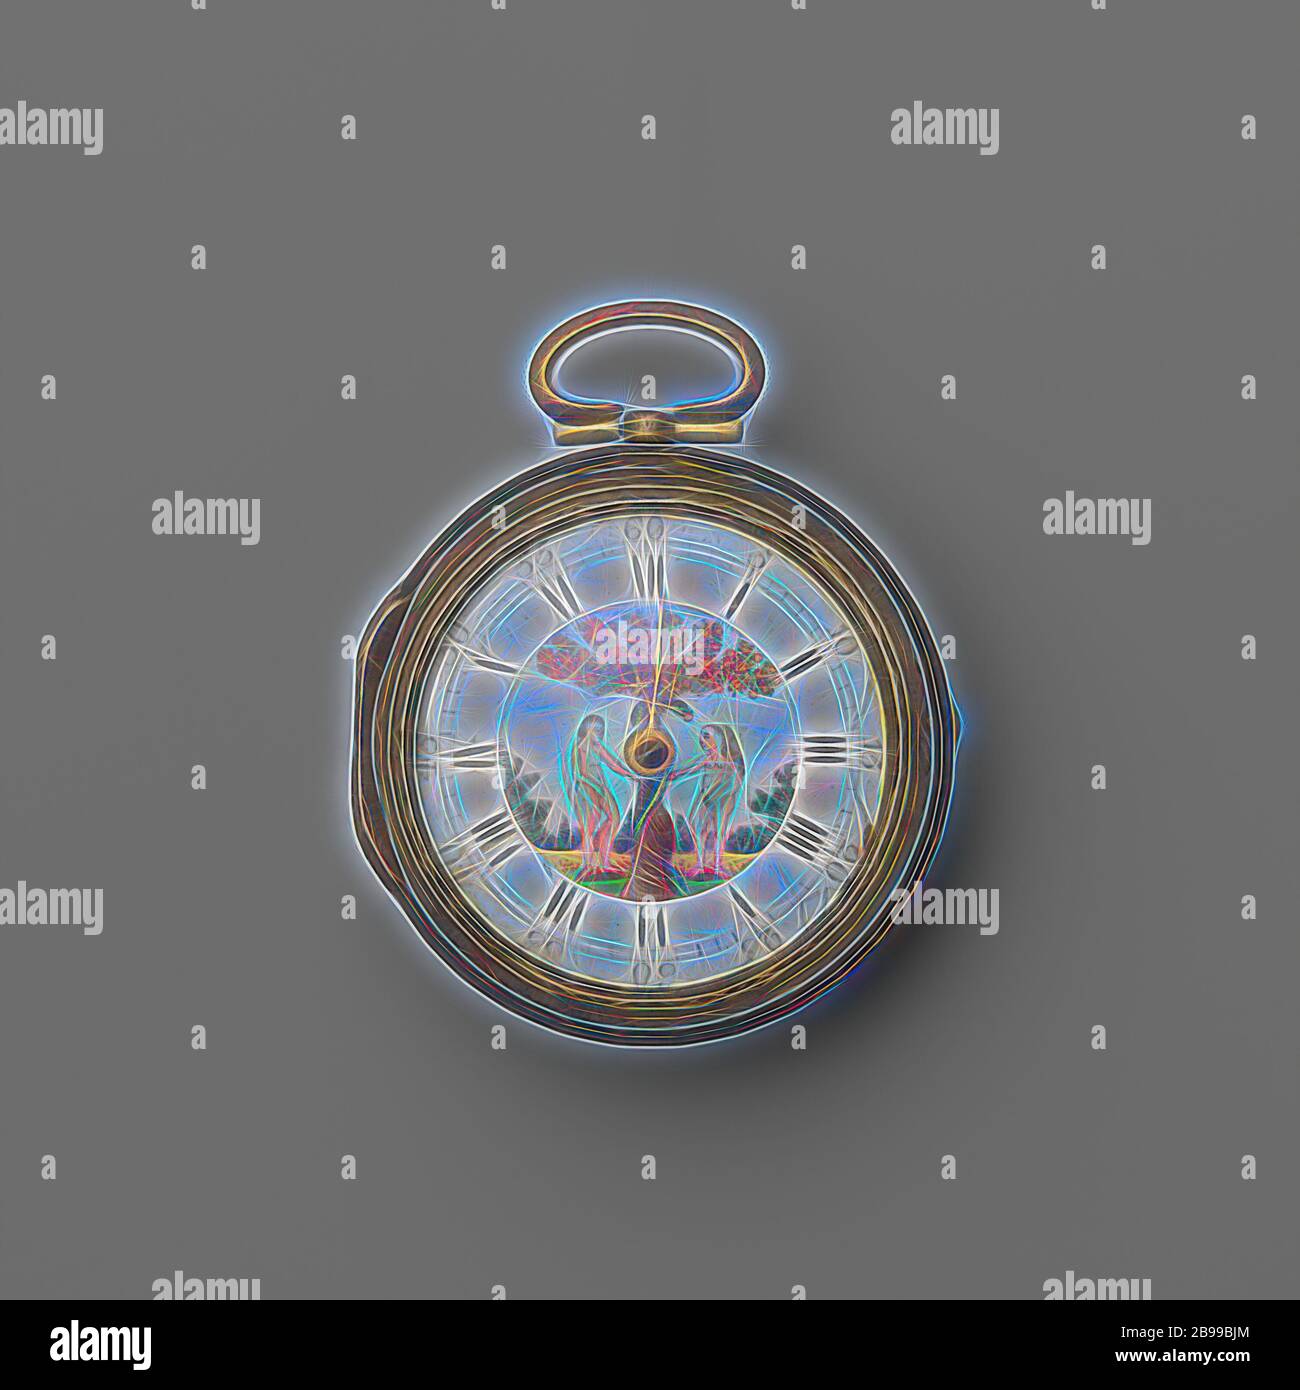 Orologio, orologio argento in una custodia morbida e sciolta. Il quadrante  bianco smaltato ha un dipinto di smalto, raffigurante Adamo ed Eva., Wm.  Legno, Londra, 1785, argento (metallo), d 4.5 cm d